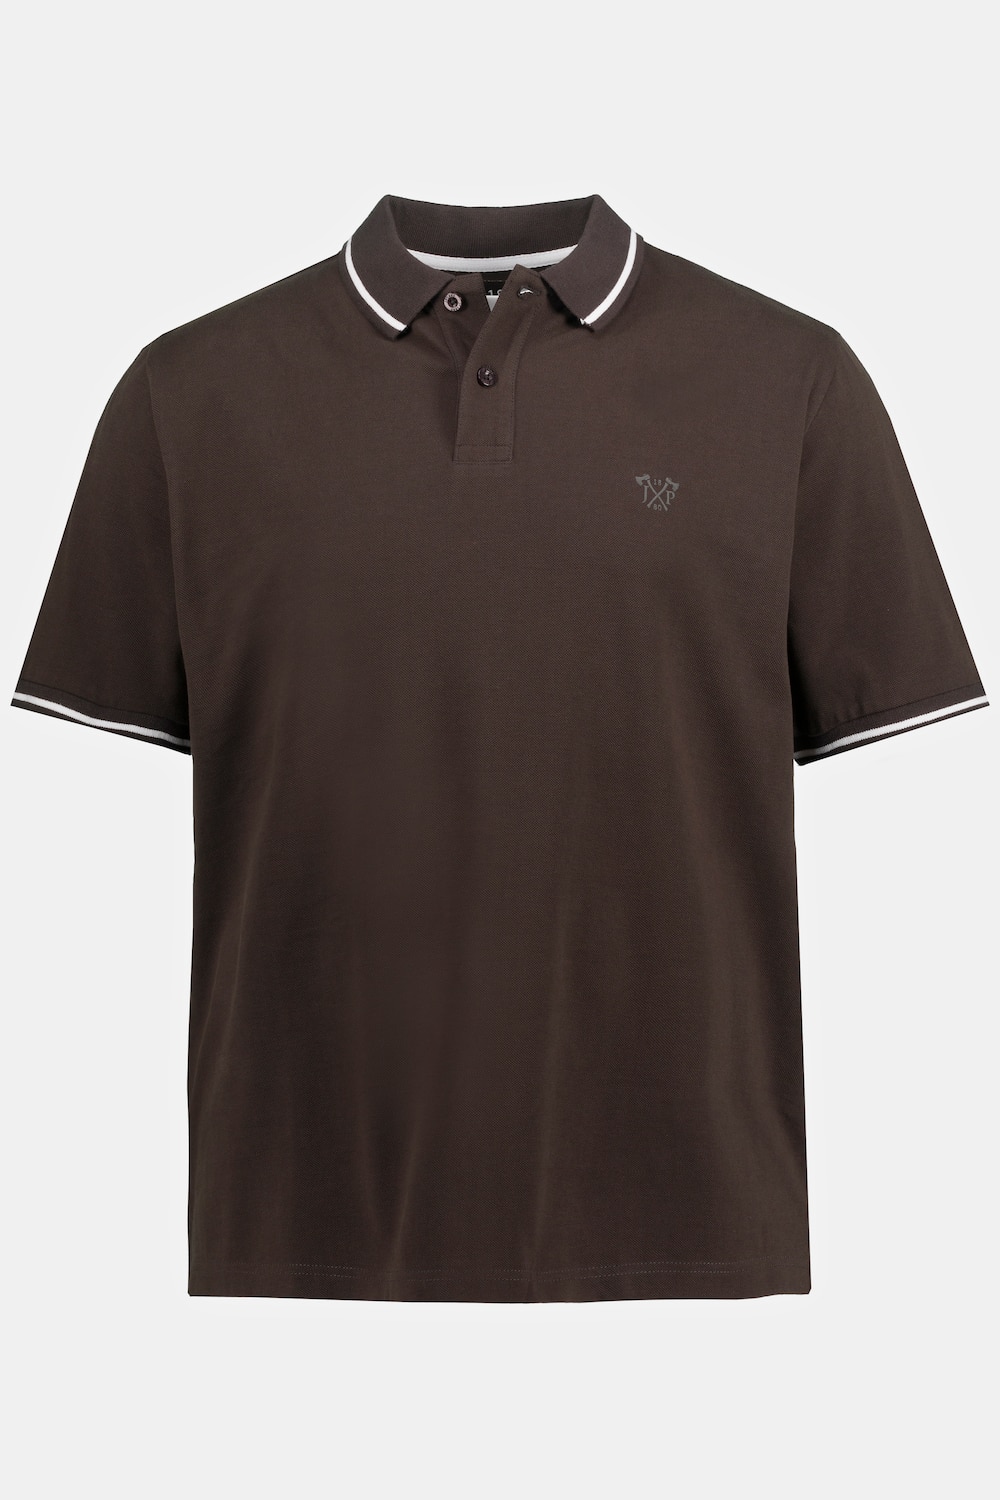 Poloshirt, Große Größen, Herren, braun, Größe: LT, Baumwolle, JP1880 product